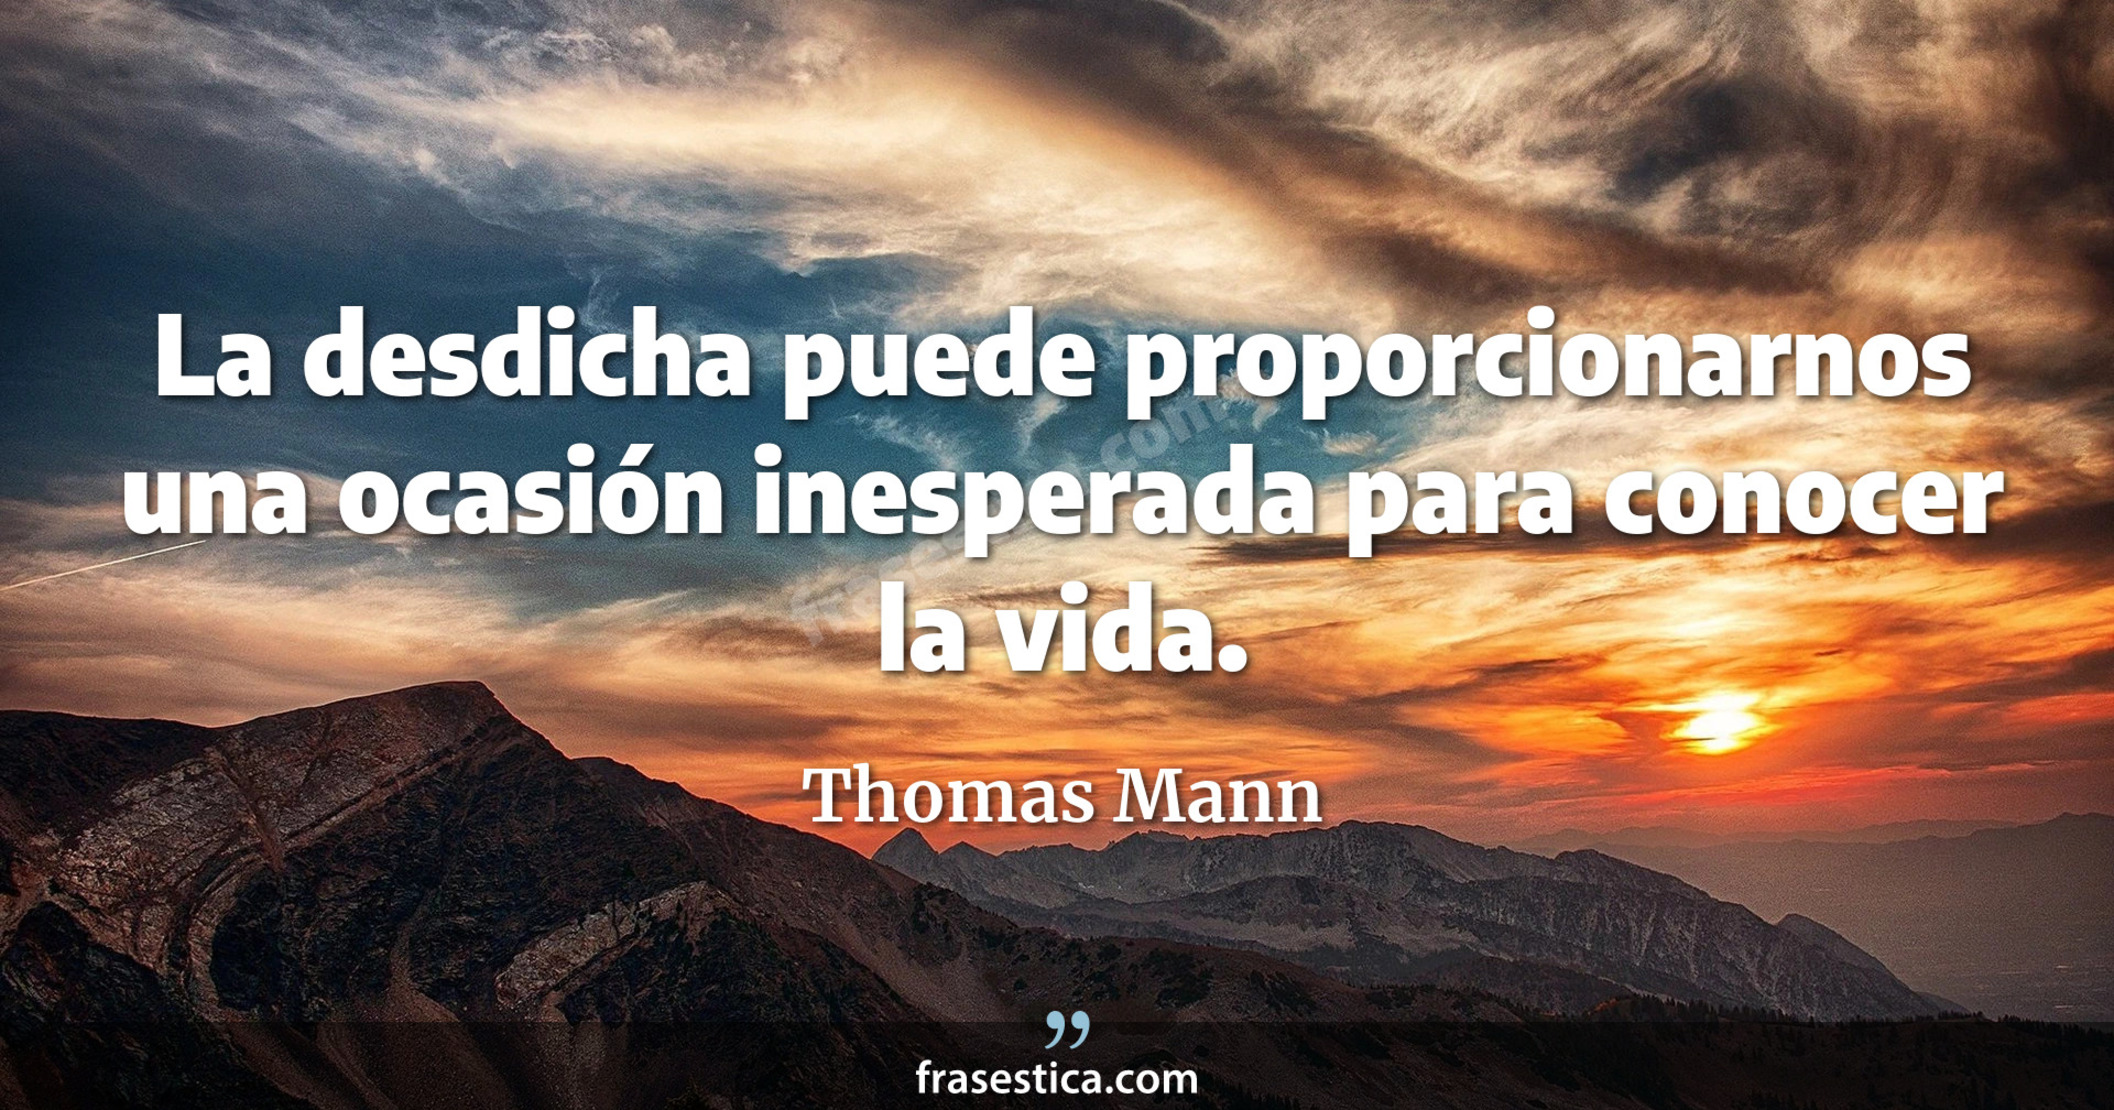 La desdicha puede proporcionarnos una ocasión inesperada para conocer la vida. - Thomas Mann